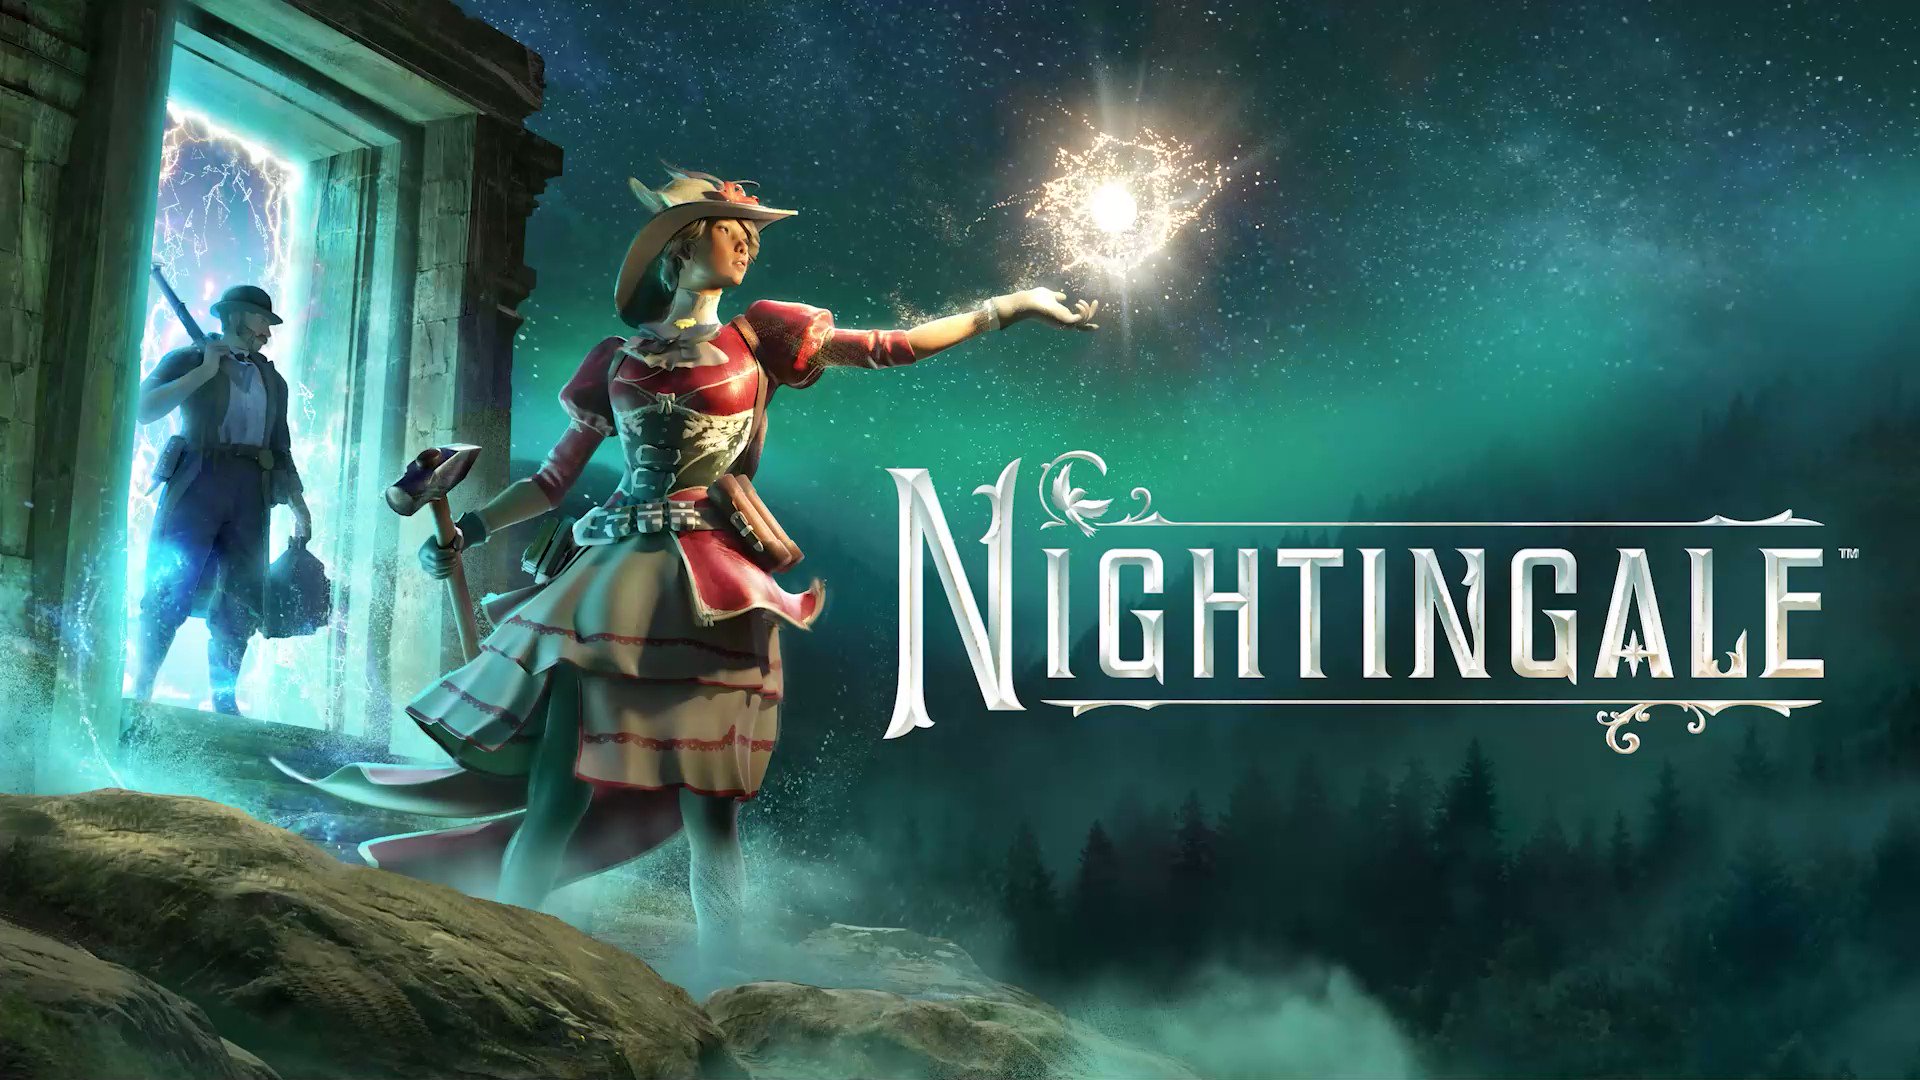 Nightingale ประกาศเลื่อนออกไปปี ค.ศ. 2023 เพื่อขอเวลาเพิ่มหลังจากอัปเกรด Unreal Engine 5